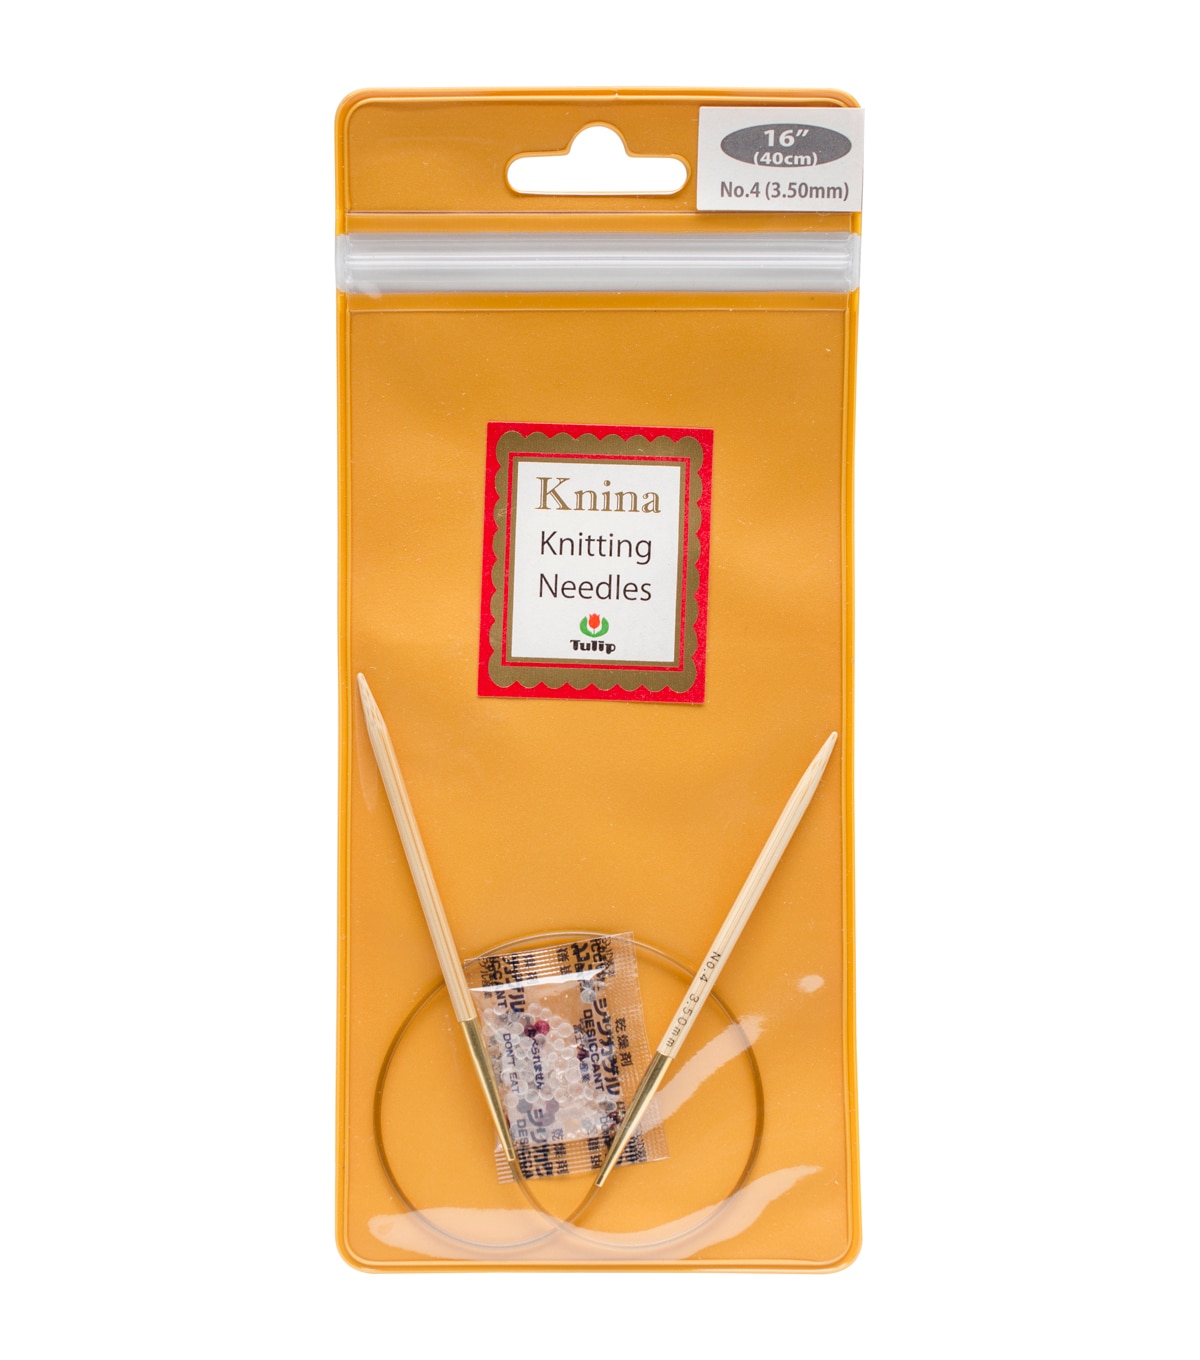 Tulip Needle Company Knina Knitting Needles 16'' Size 4 | JOANN